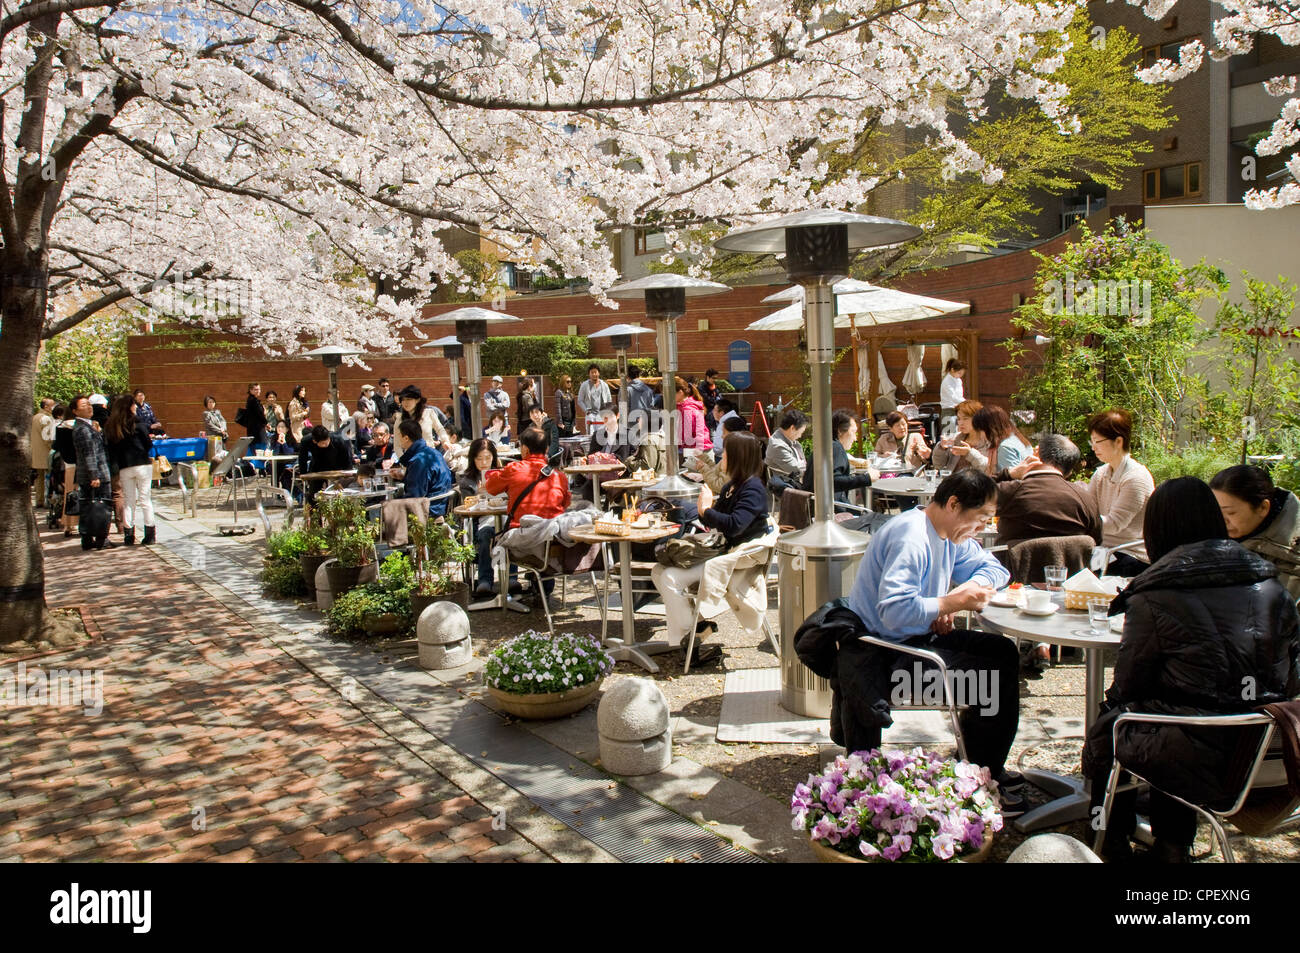 Le persone che si godono il sakura Cherry Blossoms in corrispondenza di un cafe' all'aperto nel centro di Tokyo, Giappone Foto Stock